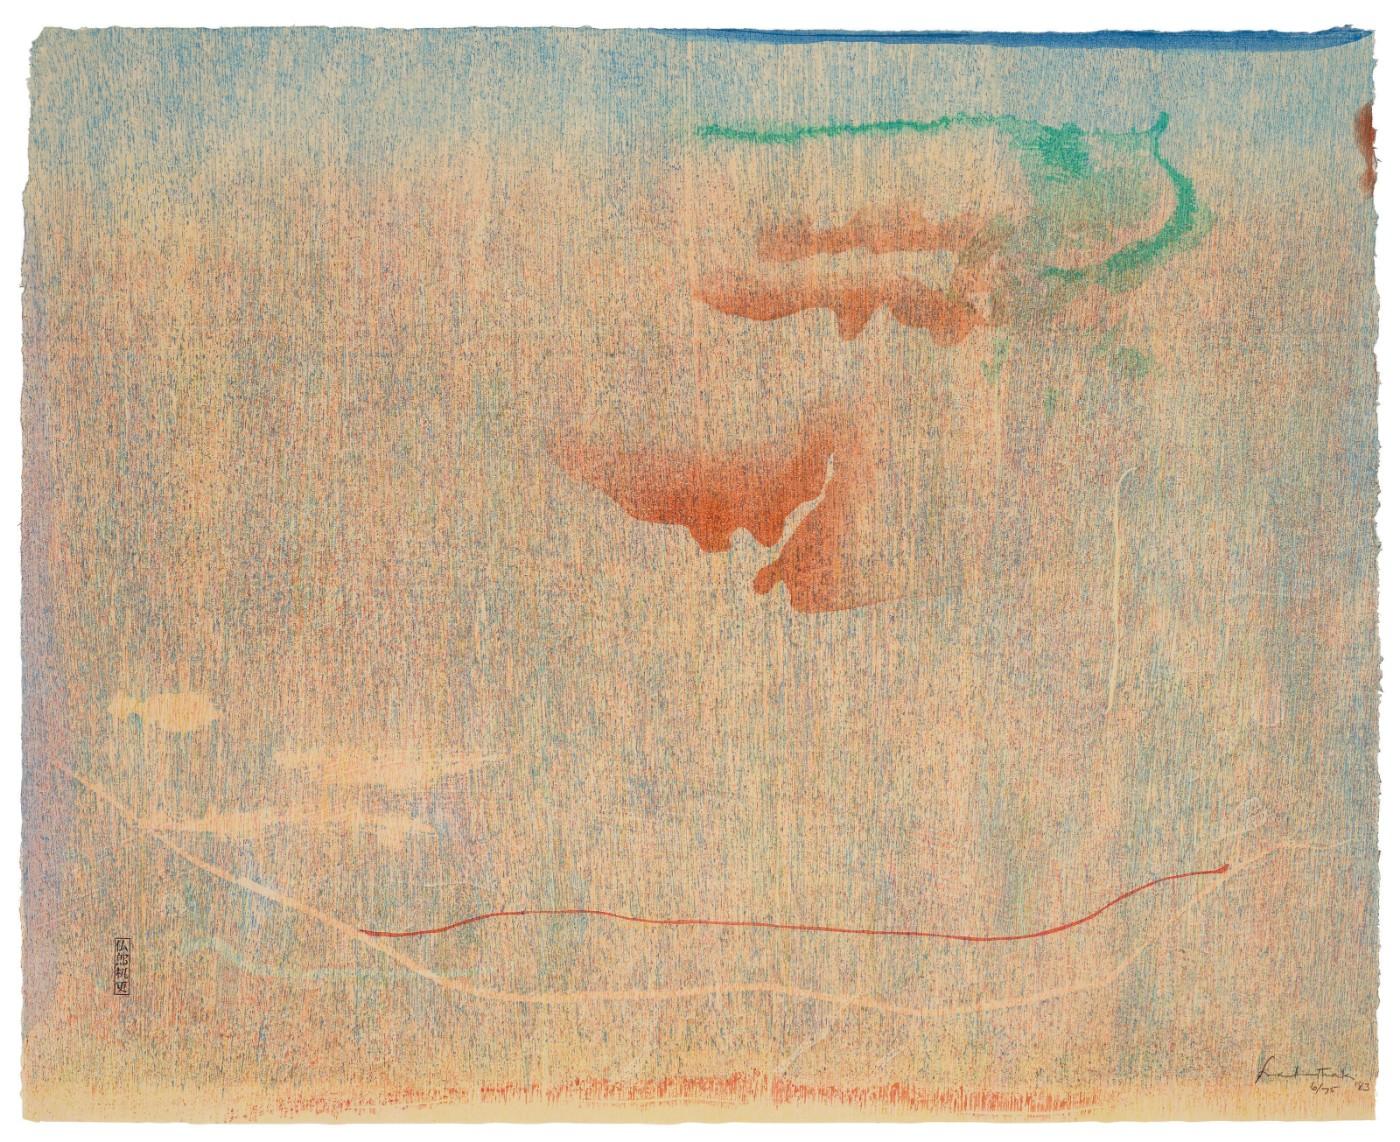 Helen Frankenthaler (1928-2011), Cedar Hill, 1983